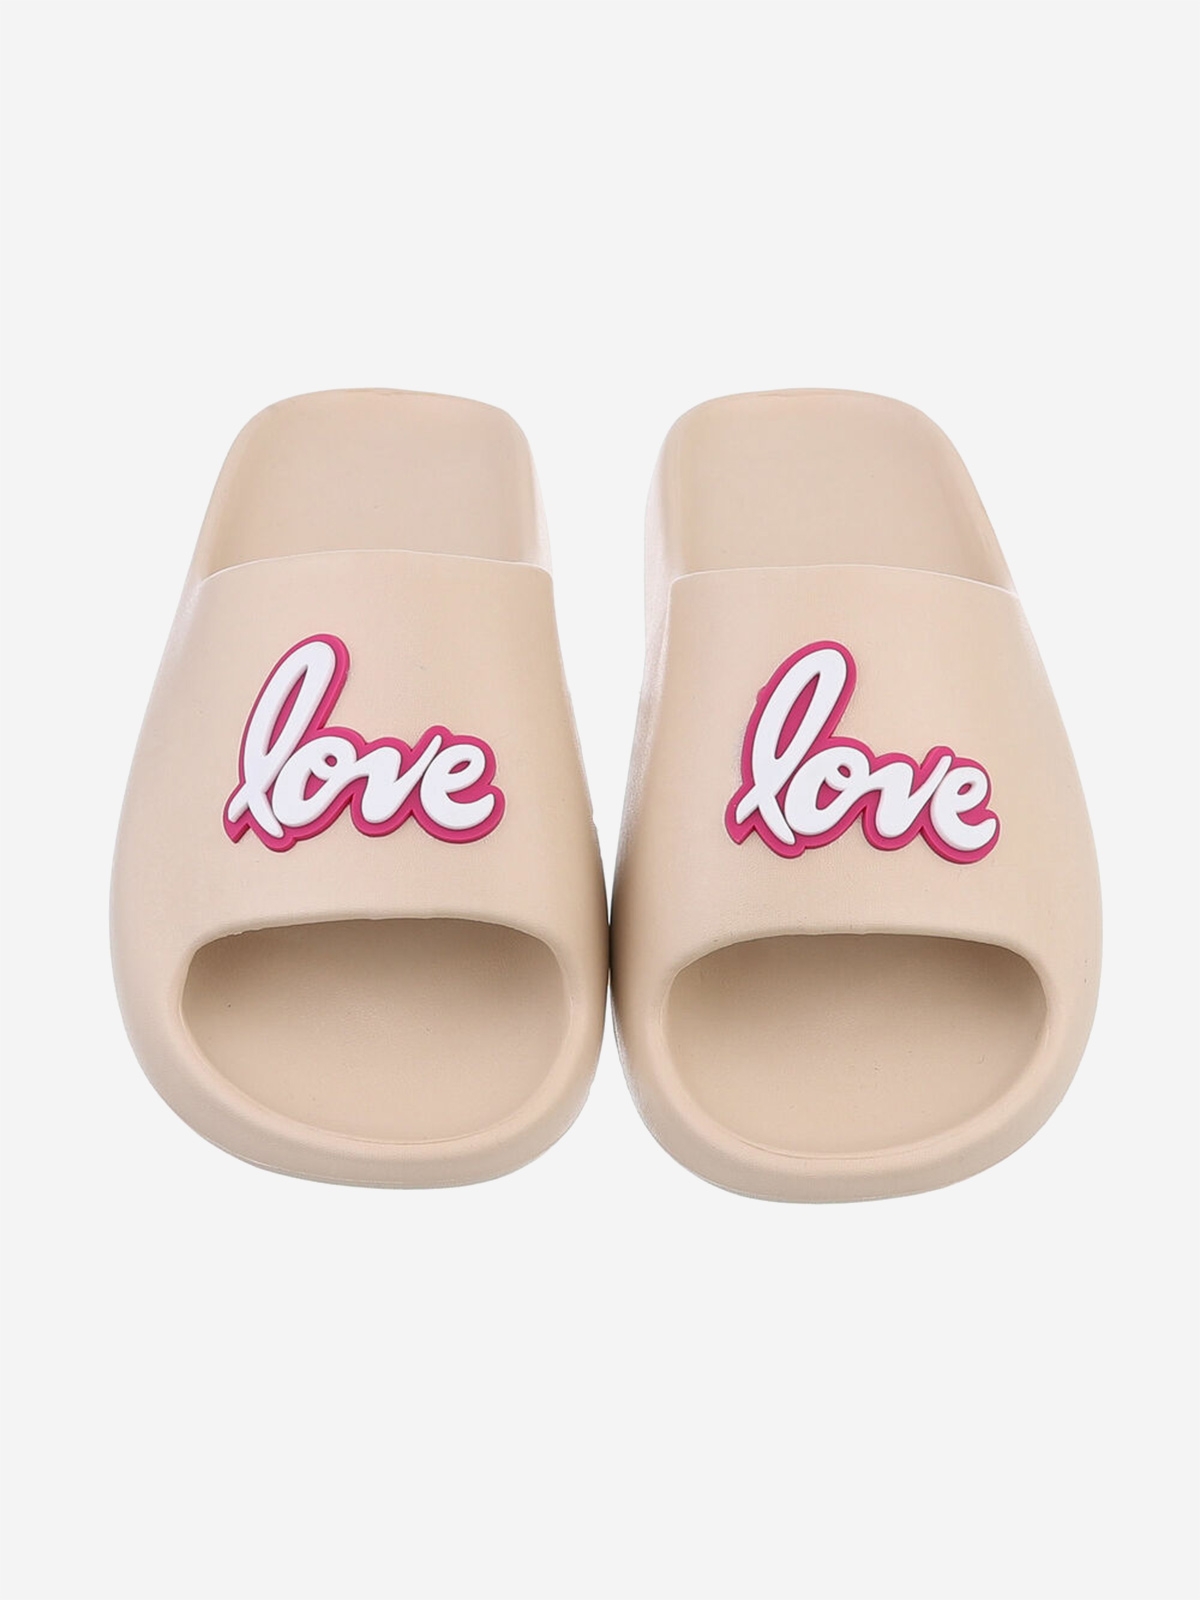 Women's slippers "LOVE" in beige